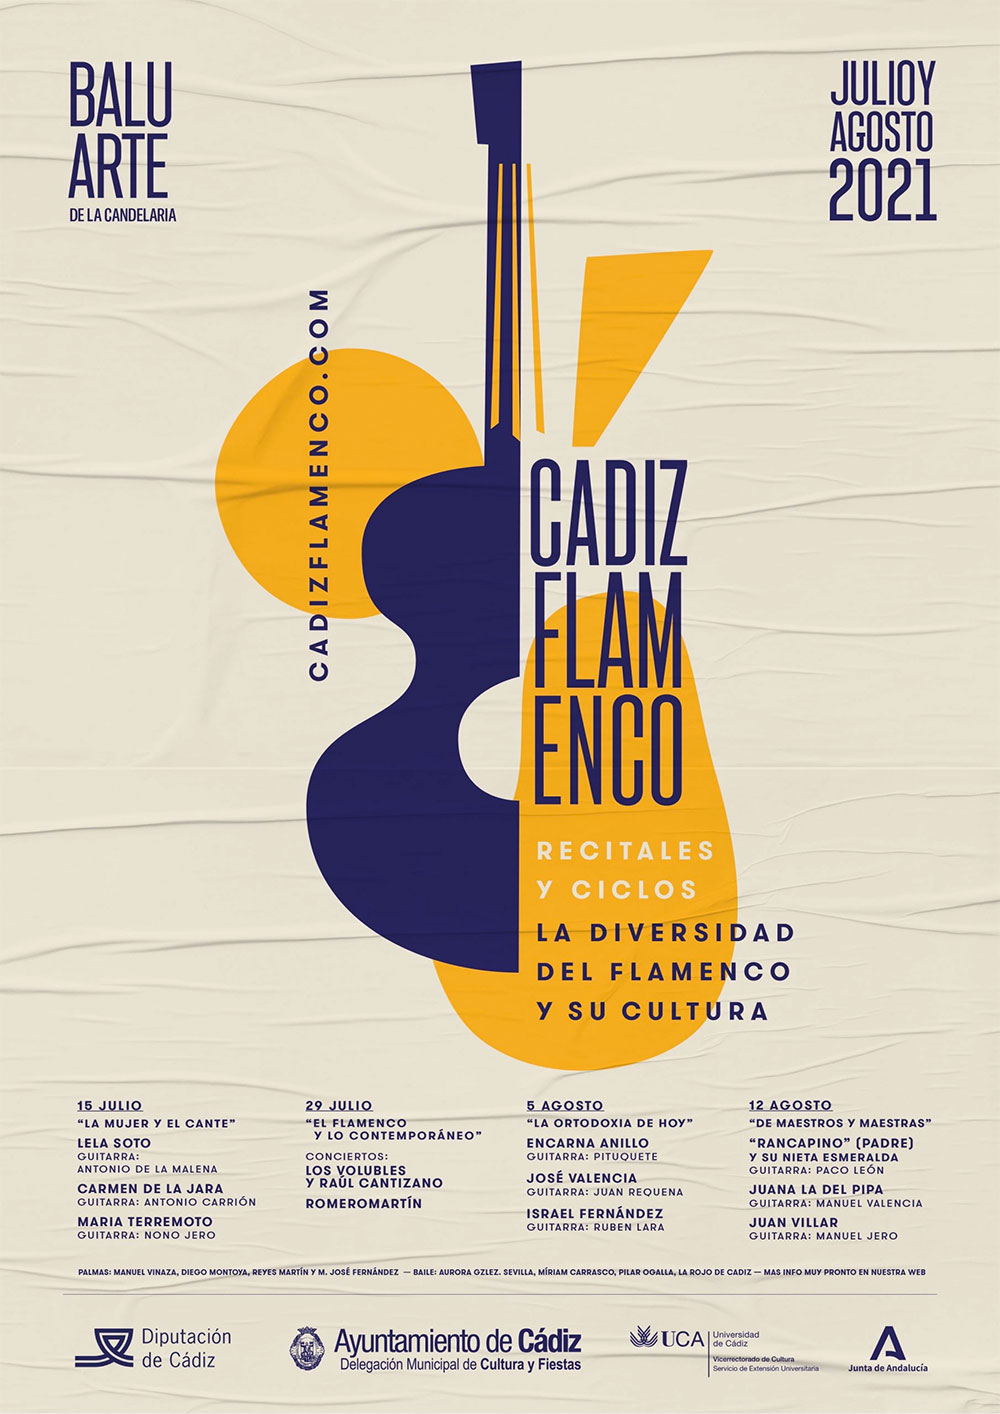 Cádiz Flamenco